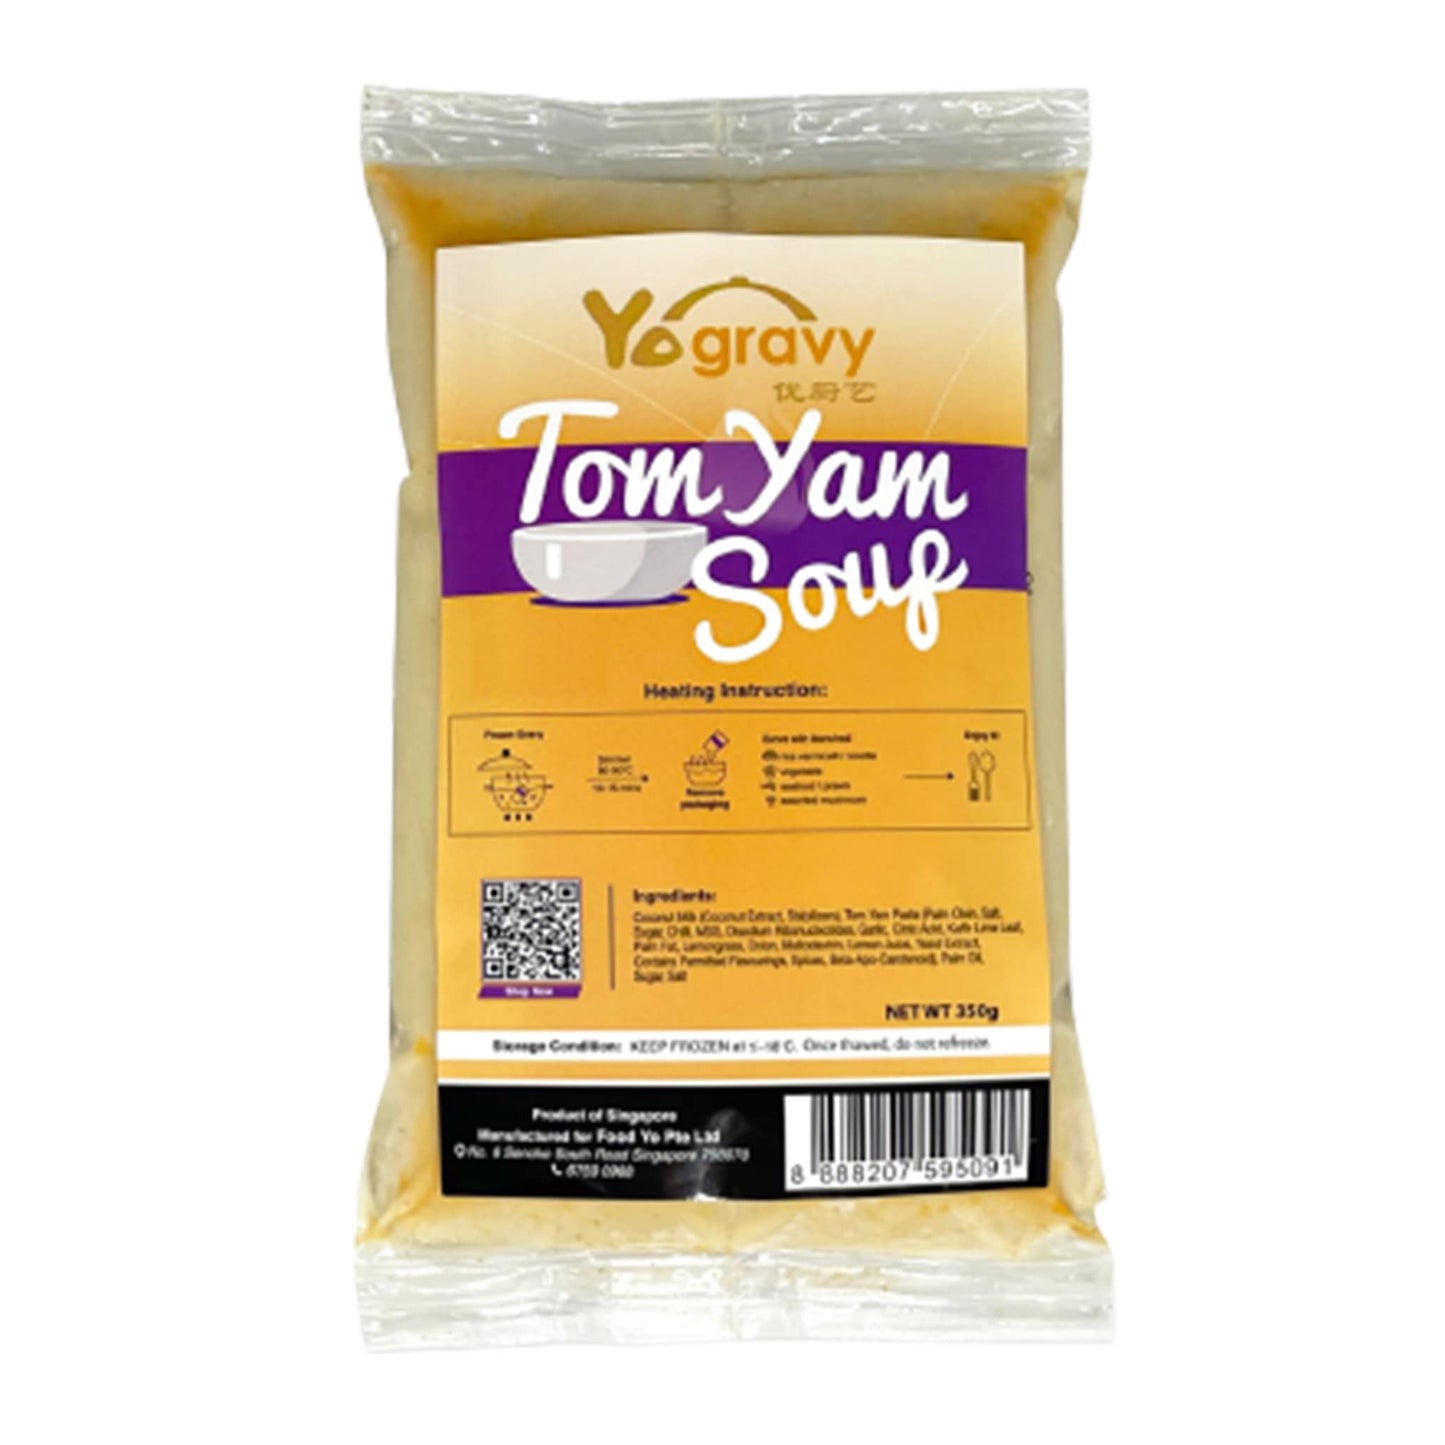 Yogravy Tom Yam Soup 350g By Food Yo - Chop Hup Chong